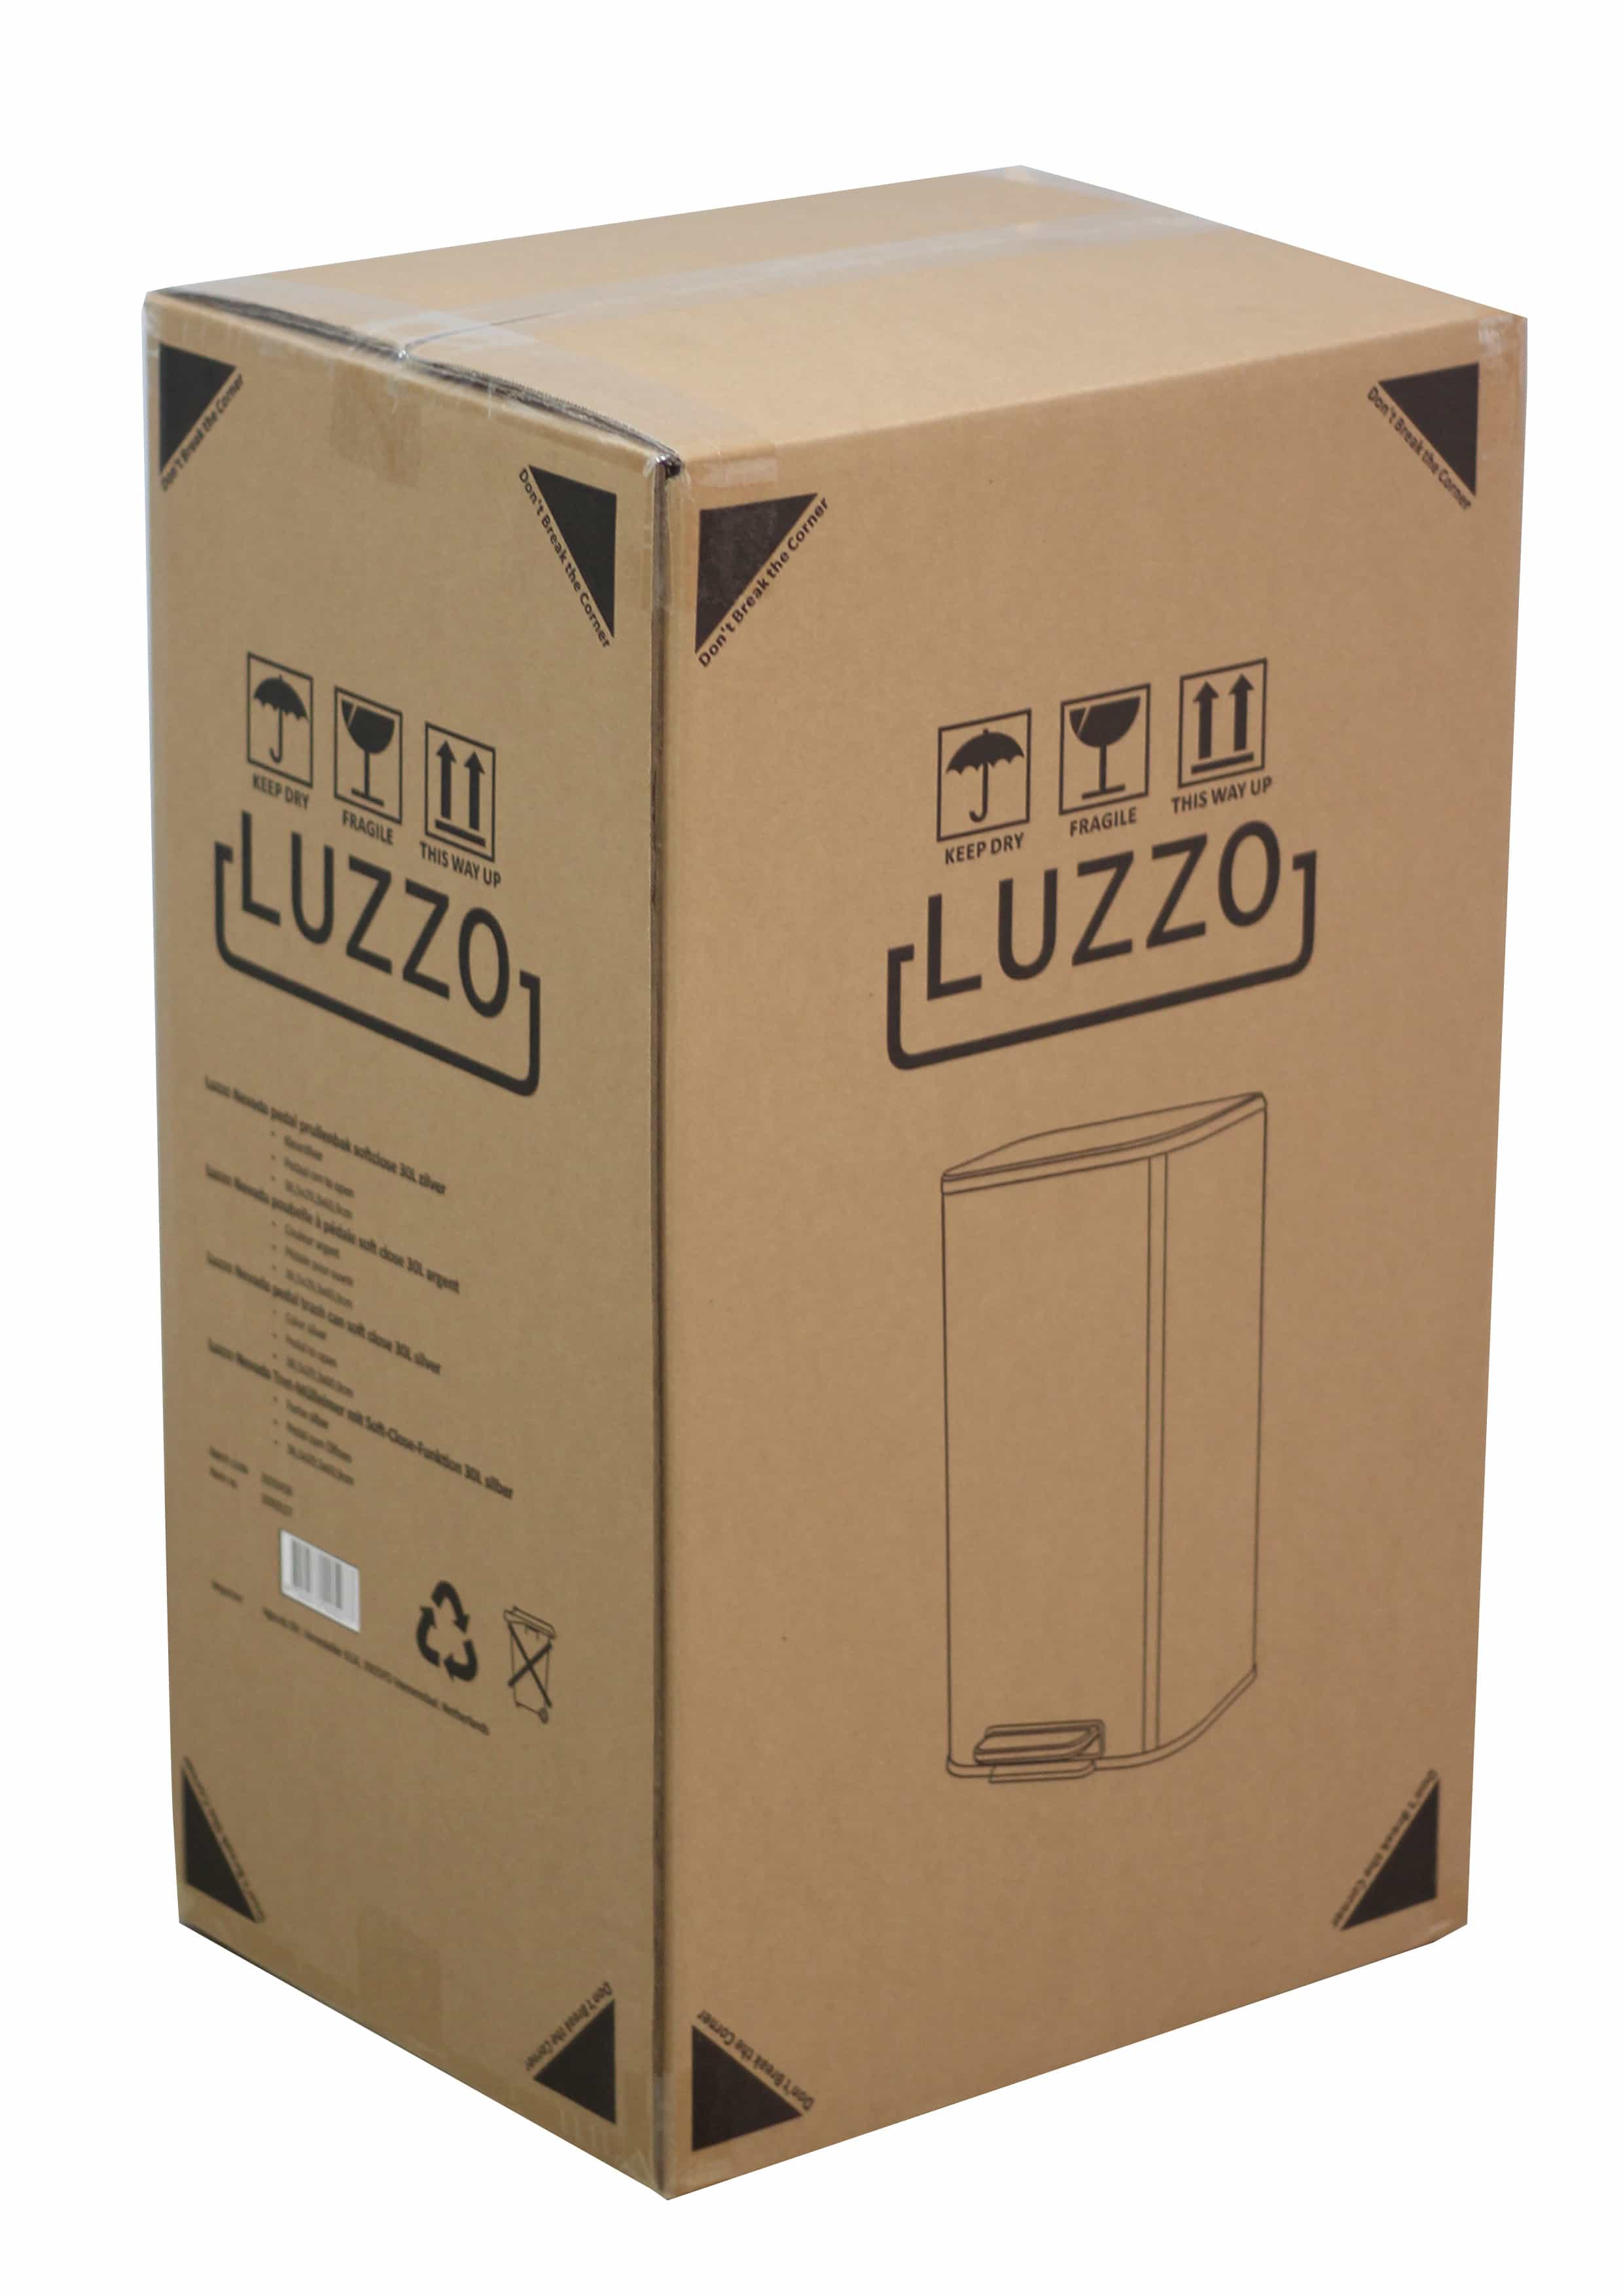 Luzzo® Nevada Pedaalemmer 30 liter - Prullenbak Mat RVS